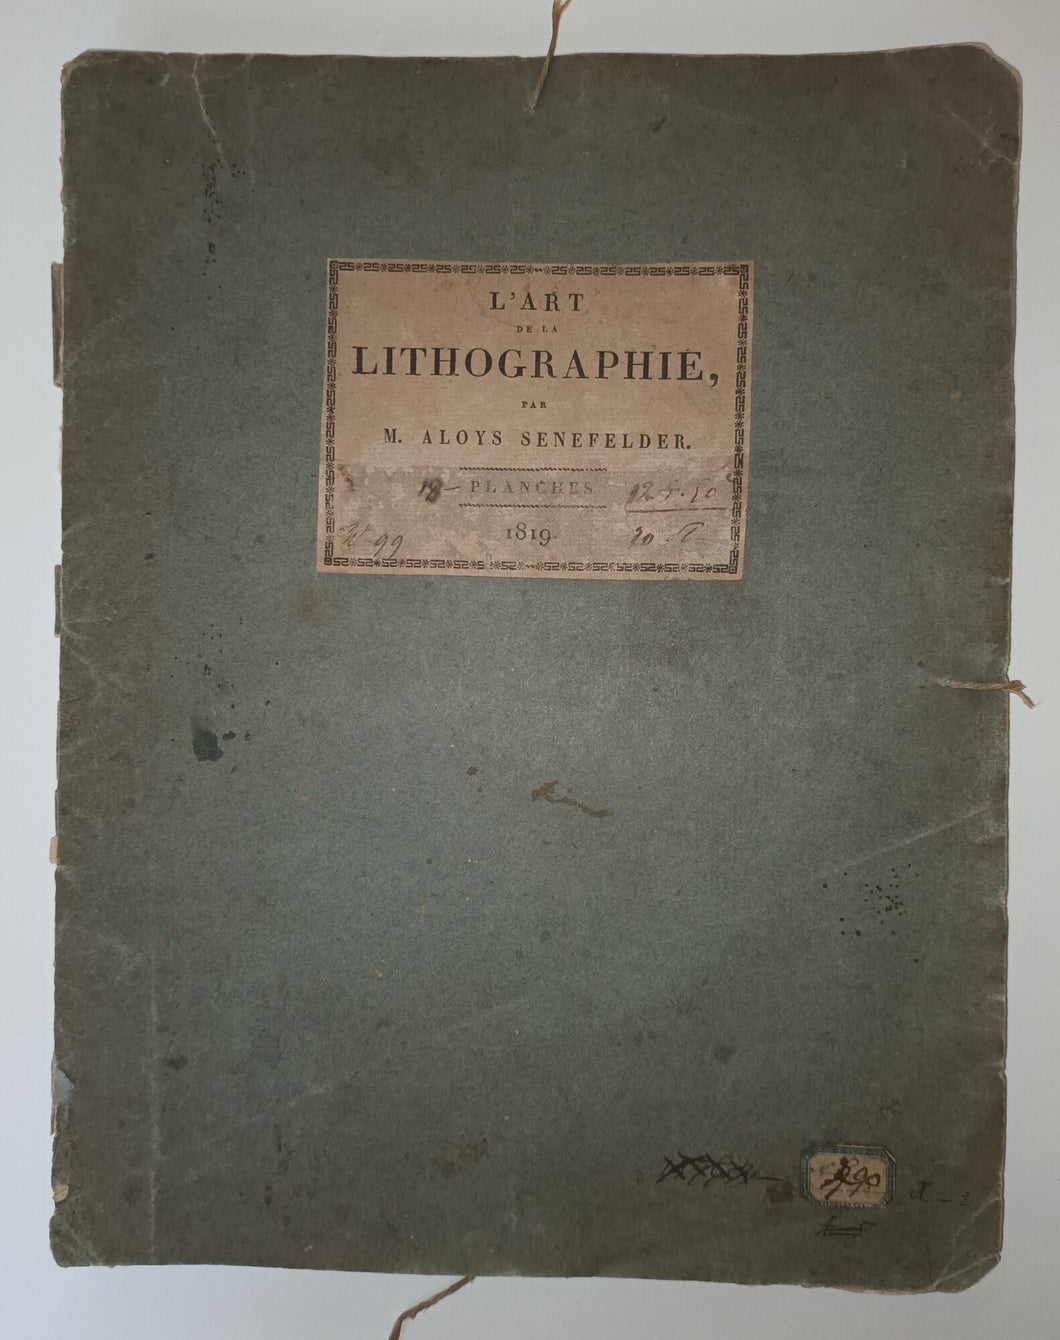 Collection de plusieurs essais en dessins et gravures, pour servir de Supplément à l'Instruction pratique de la lithographie.1819.